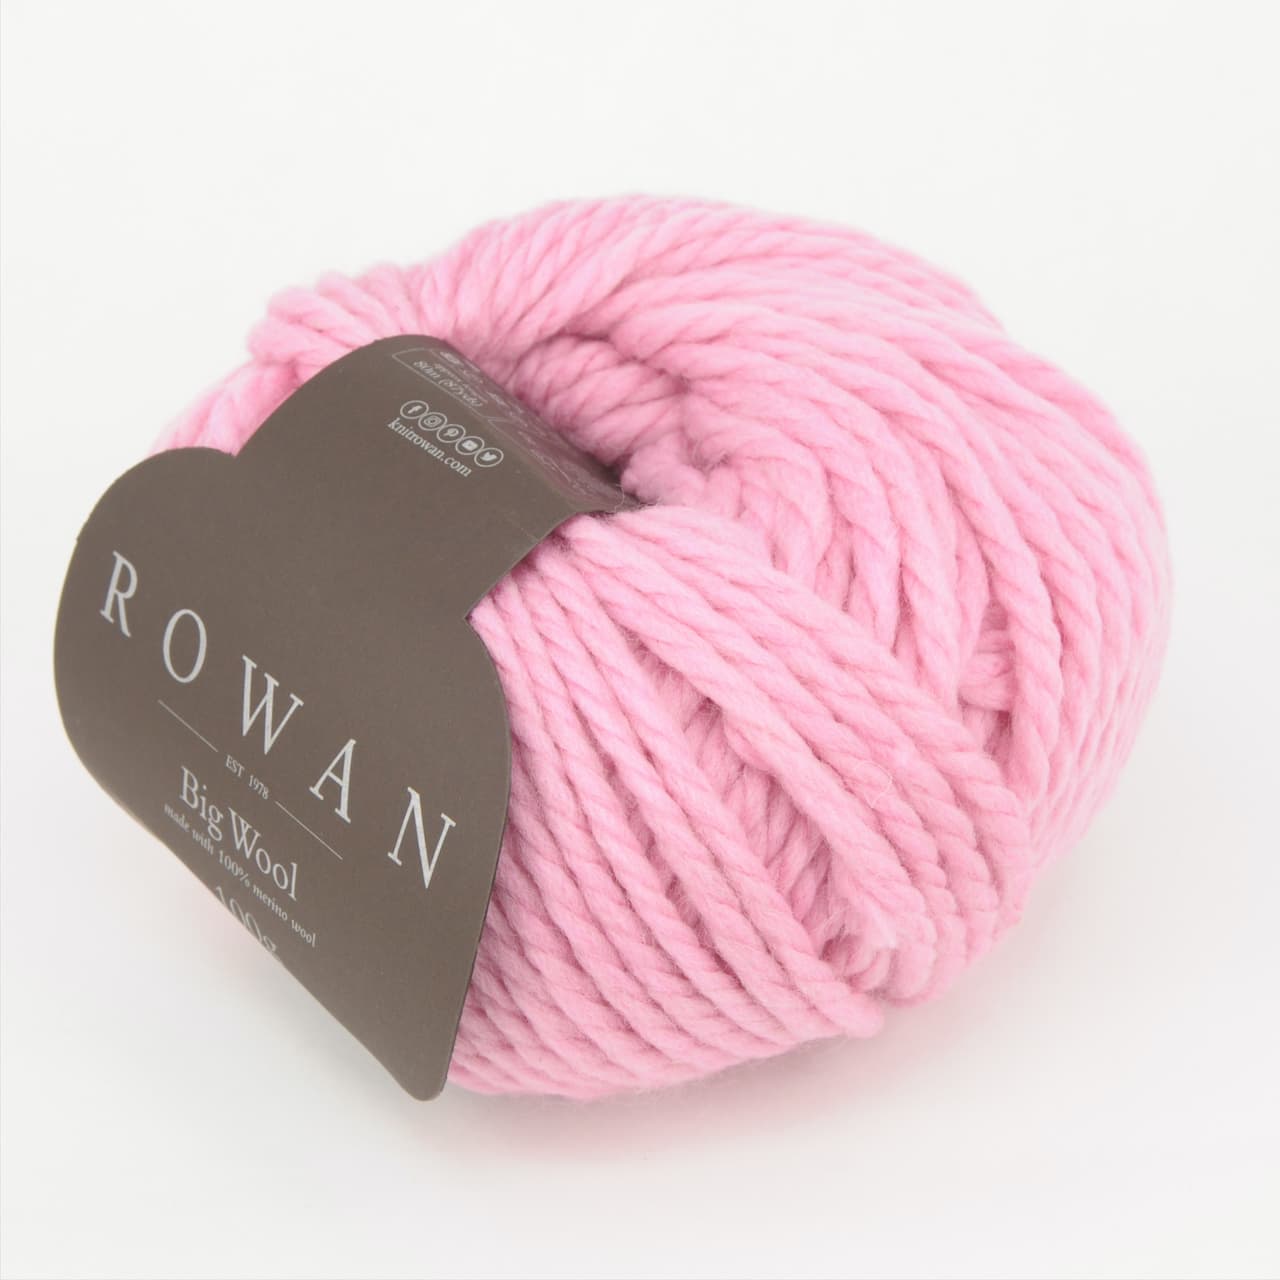 Big Wool 095 Nougat (rosa!!)